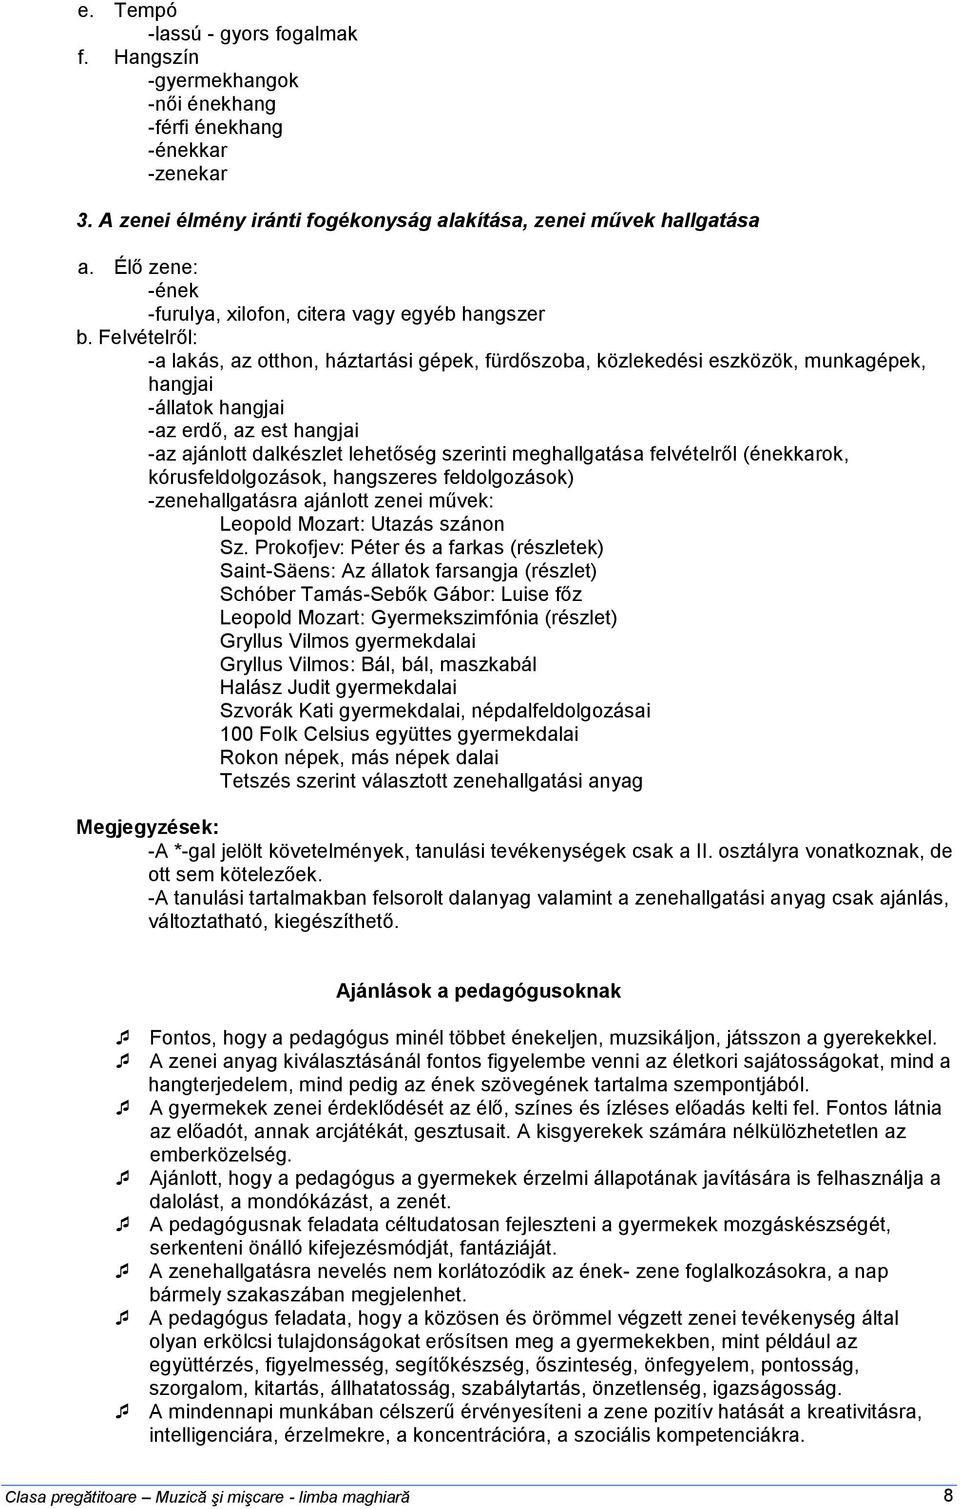 MUZICĂ ŞI MIŞCARE. Programa şcolară pentru minoritatea maghiară - PDF  Ingyenes letöltés